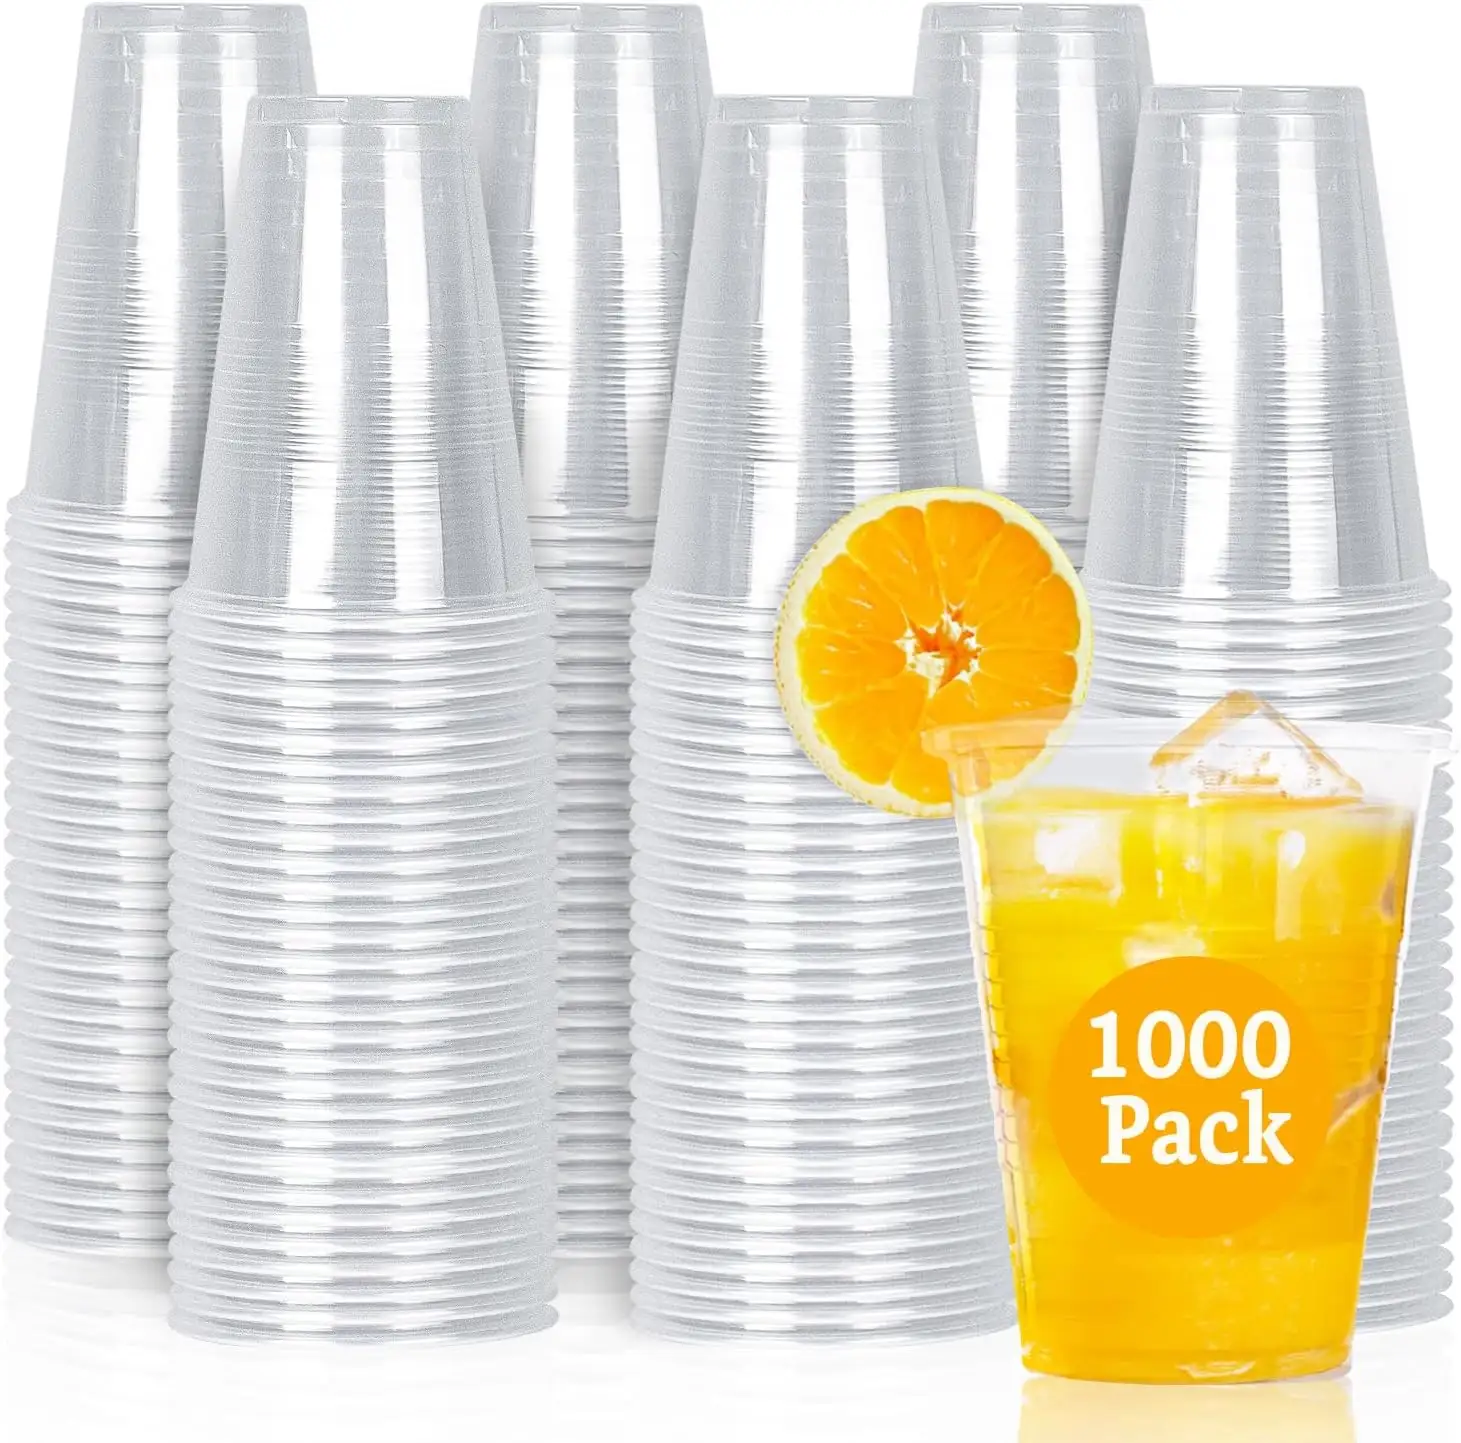 16 унций (95 мм) пластиковые холодные чашки для домашних животных-1000 ct, Бесплатная доставка (только в пределах США) одноразовые чашки для вечеринок